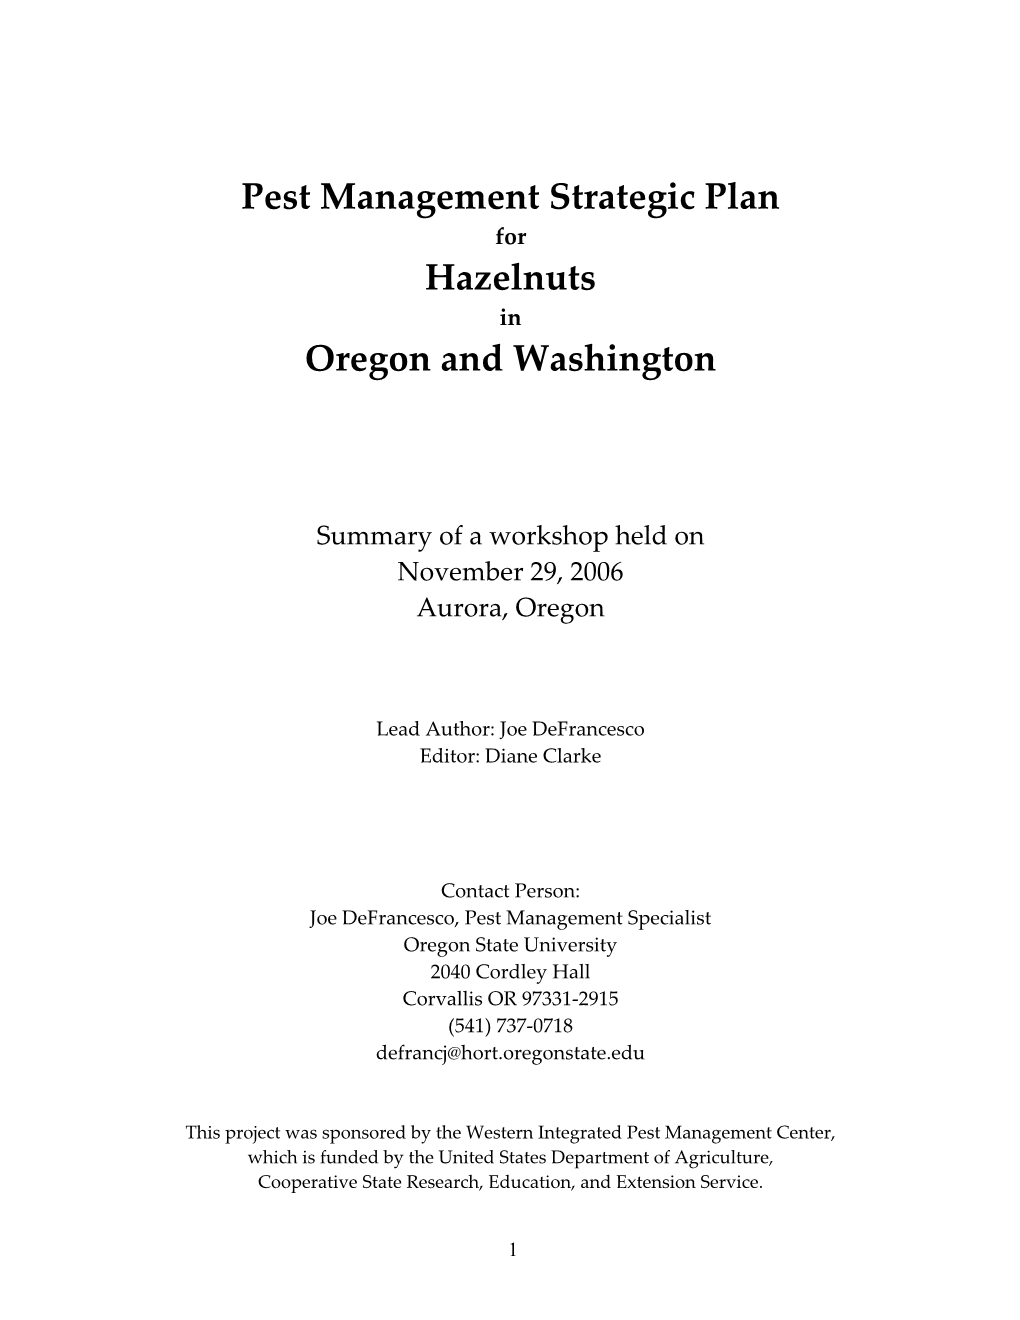 Pest Management Strategic Plan Hazelnuts Oregon and Washington